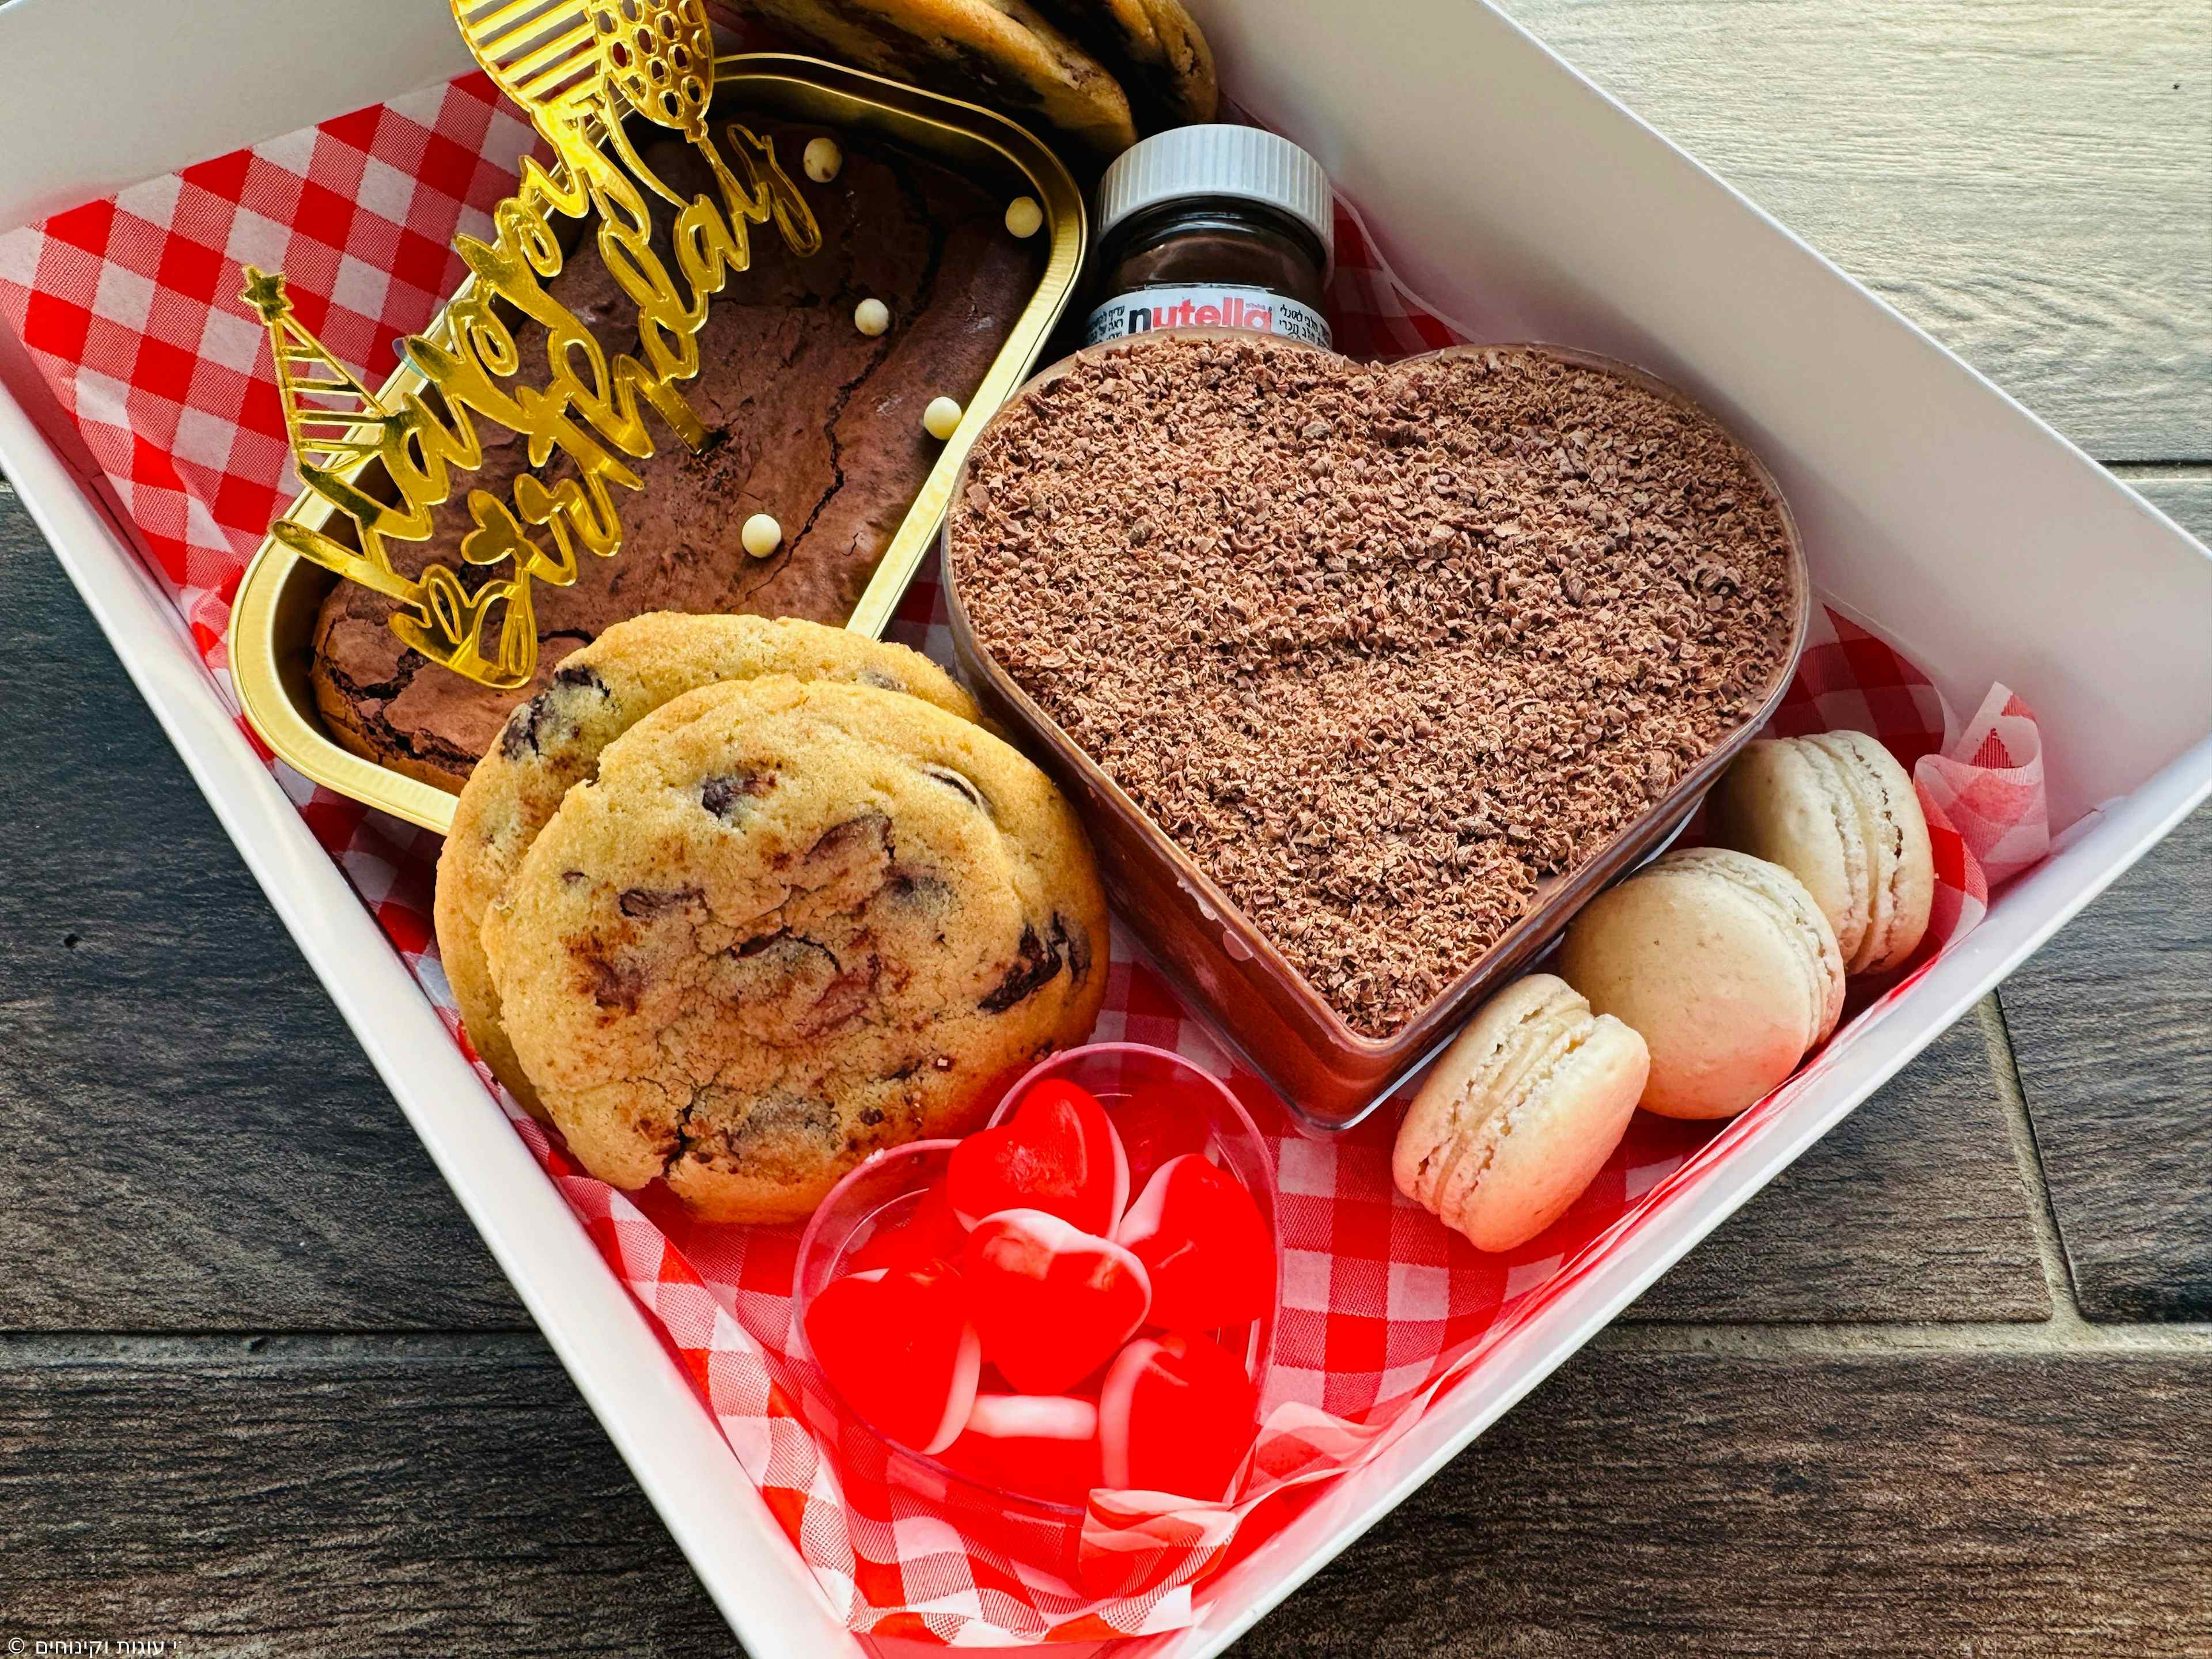 מארז מושחת - עוגיות שוקוצ׳יפס, בראוניז
מוס וסוכריות גומי